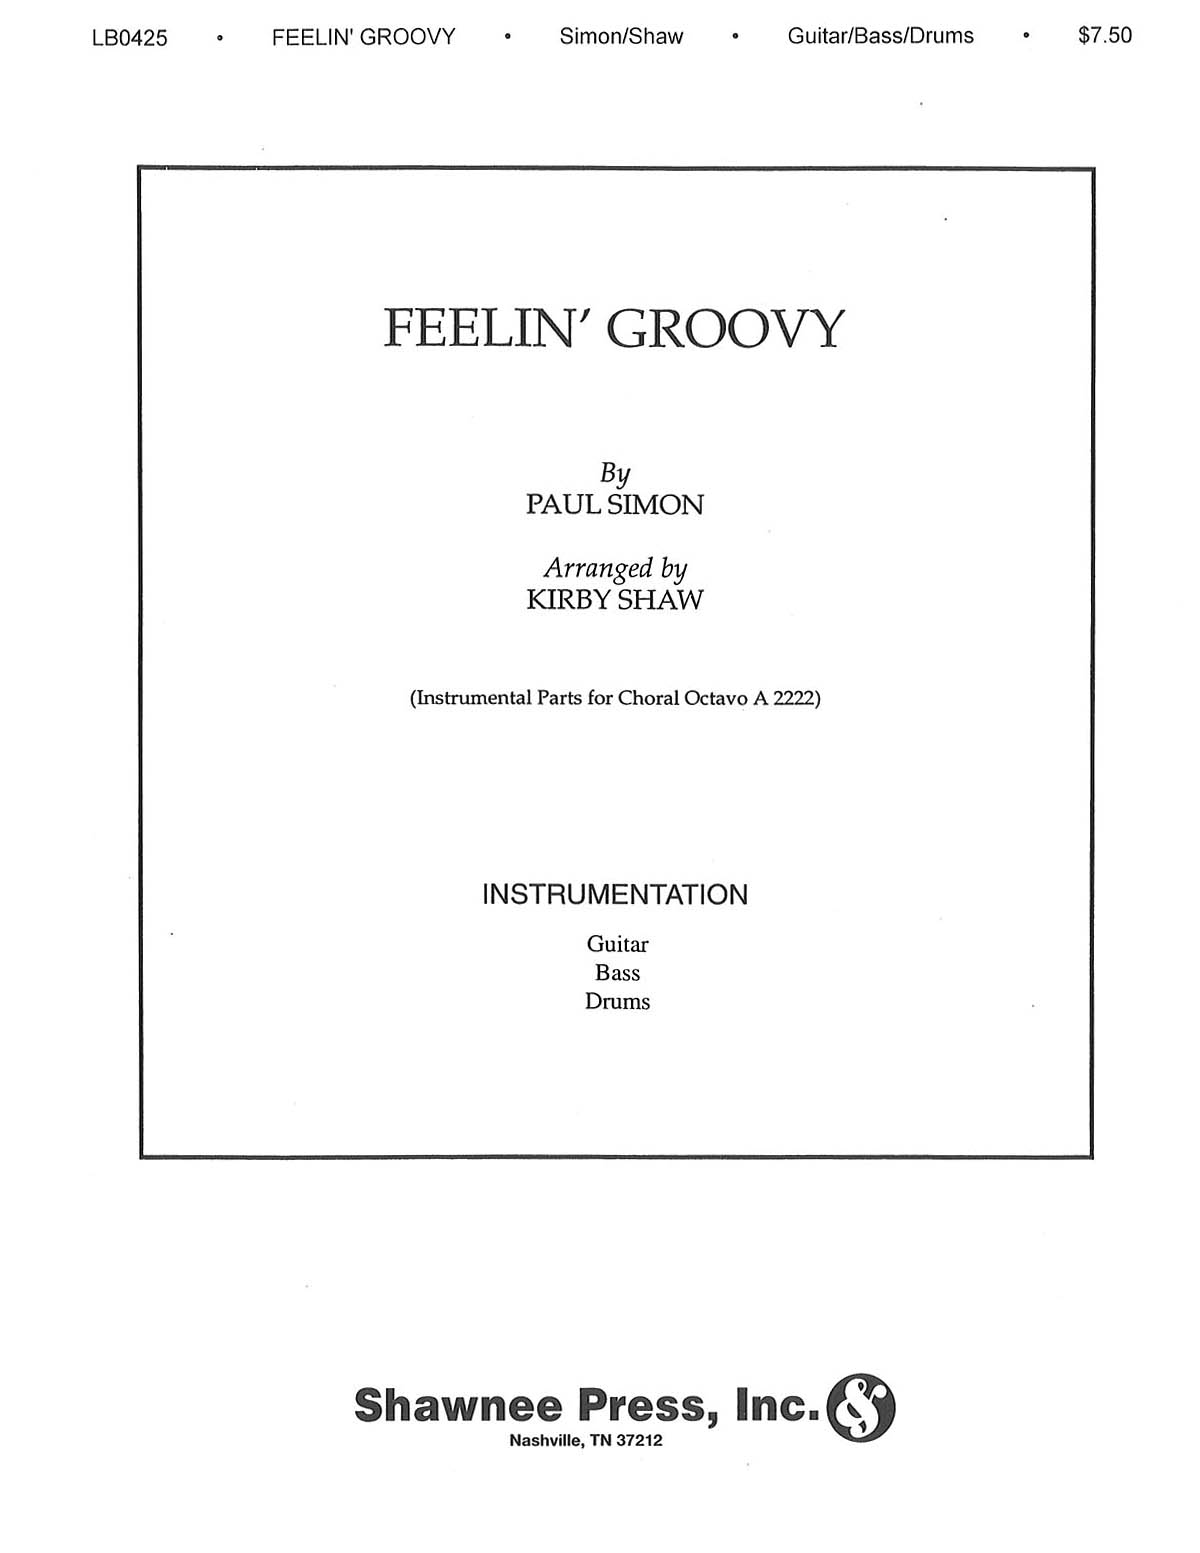 Paul Simon: Feelin' Groovy (The 59th Street Bridge Song): Part